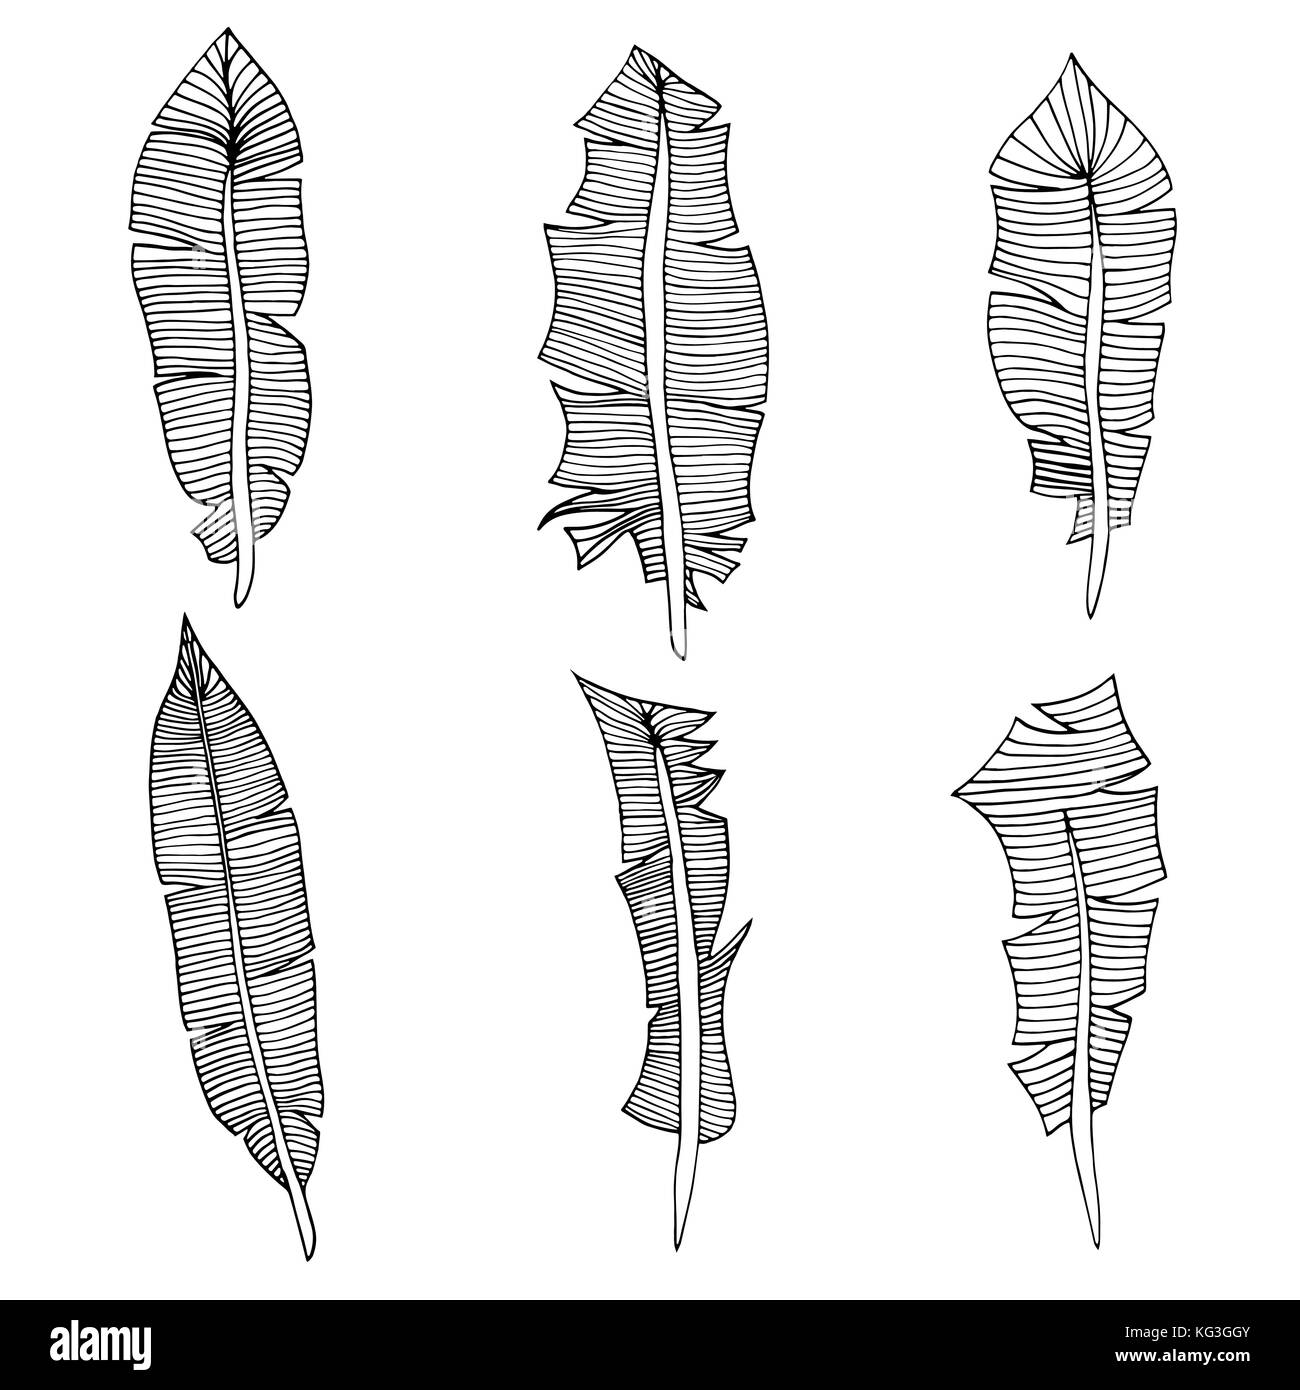 Jeu de plumes. vector illustration. isolated on white Illustration de Vecteur